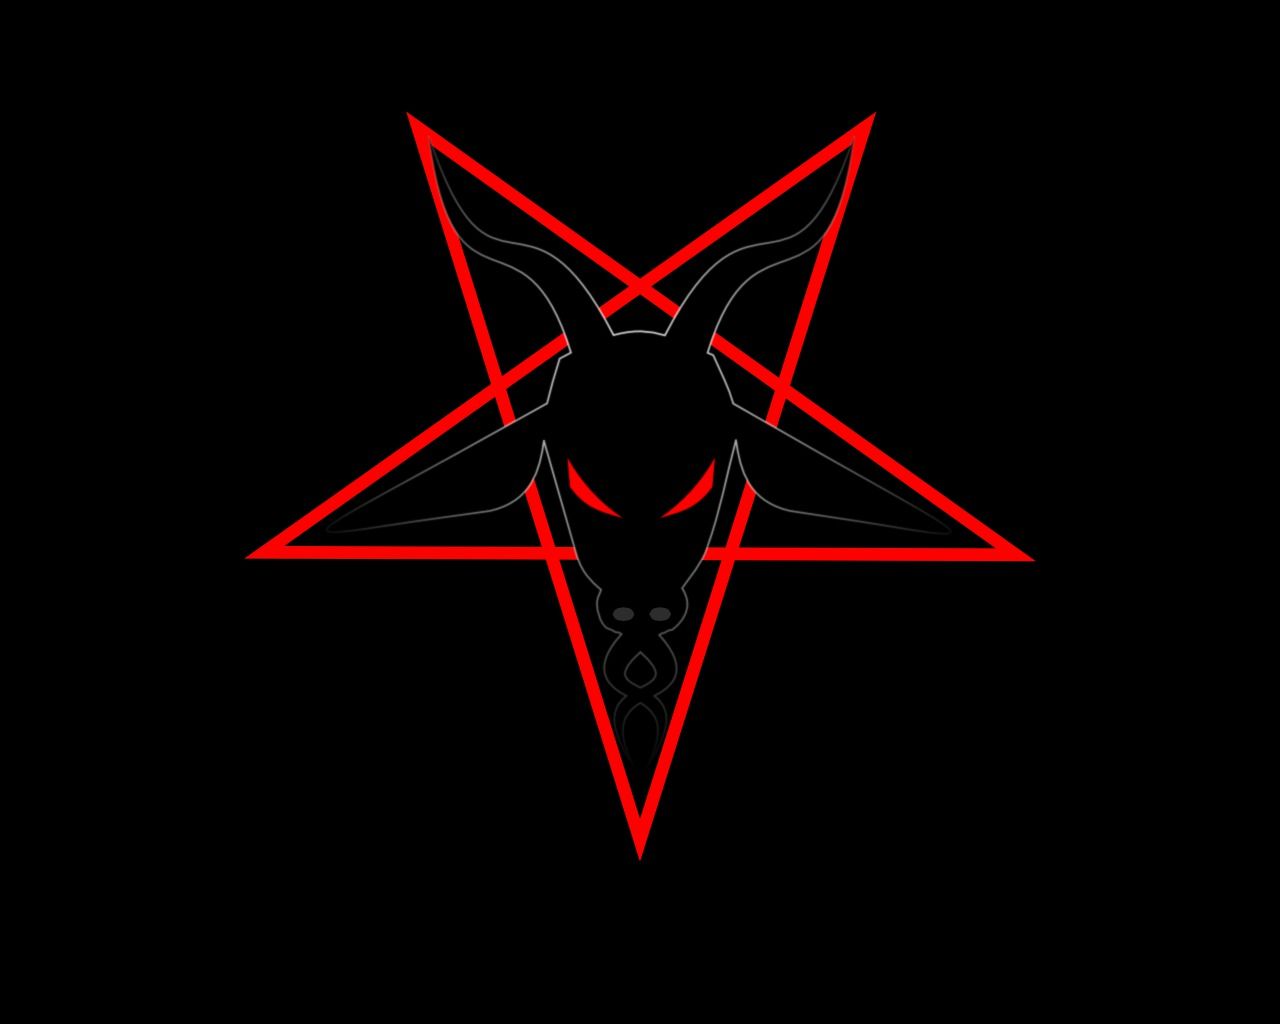 Pentagram abstract evil goat pentagram religion satanic scary 1280x1024